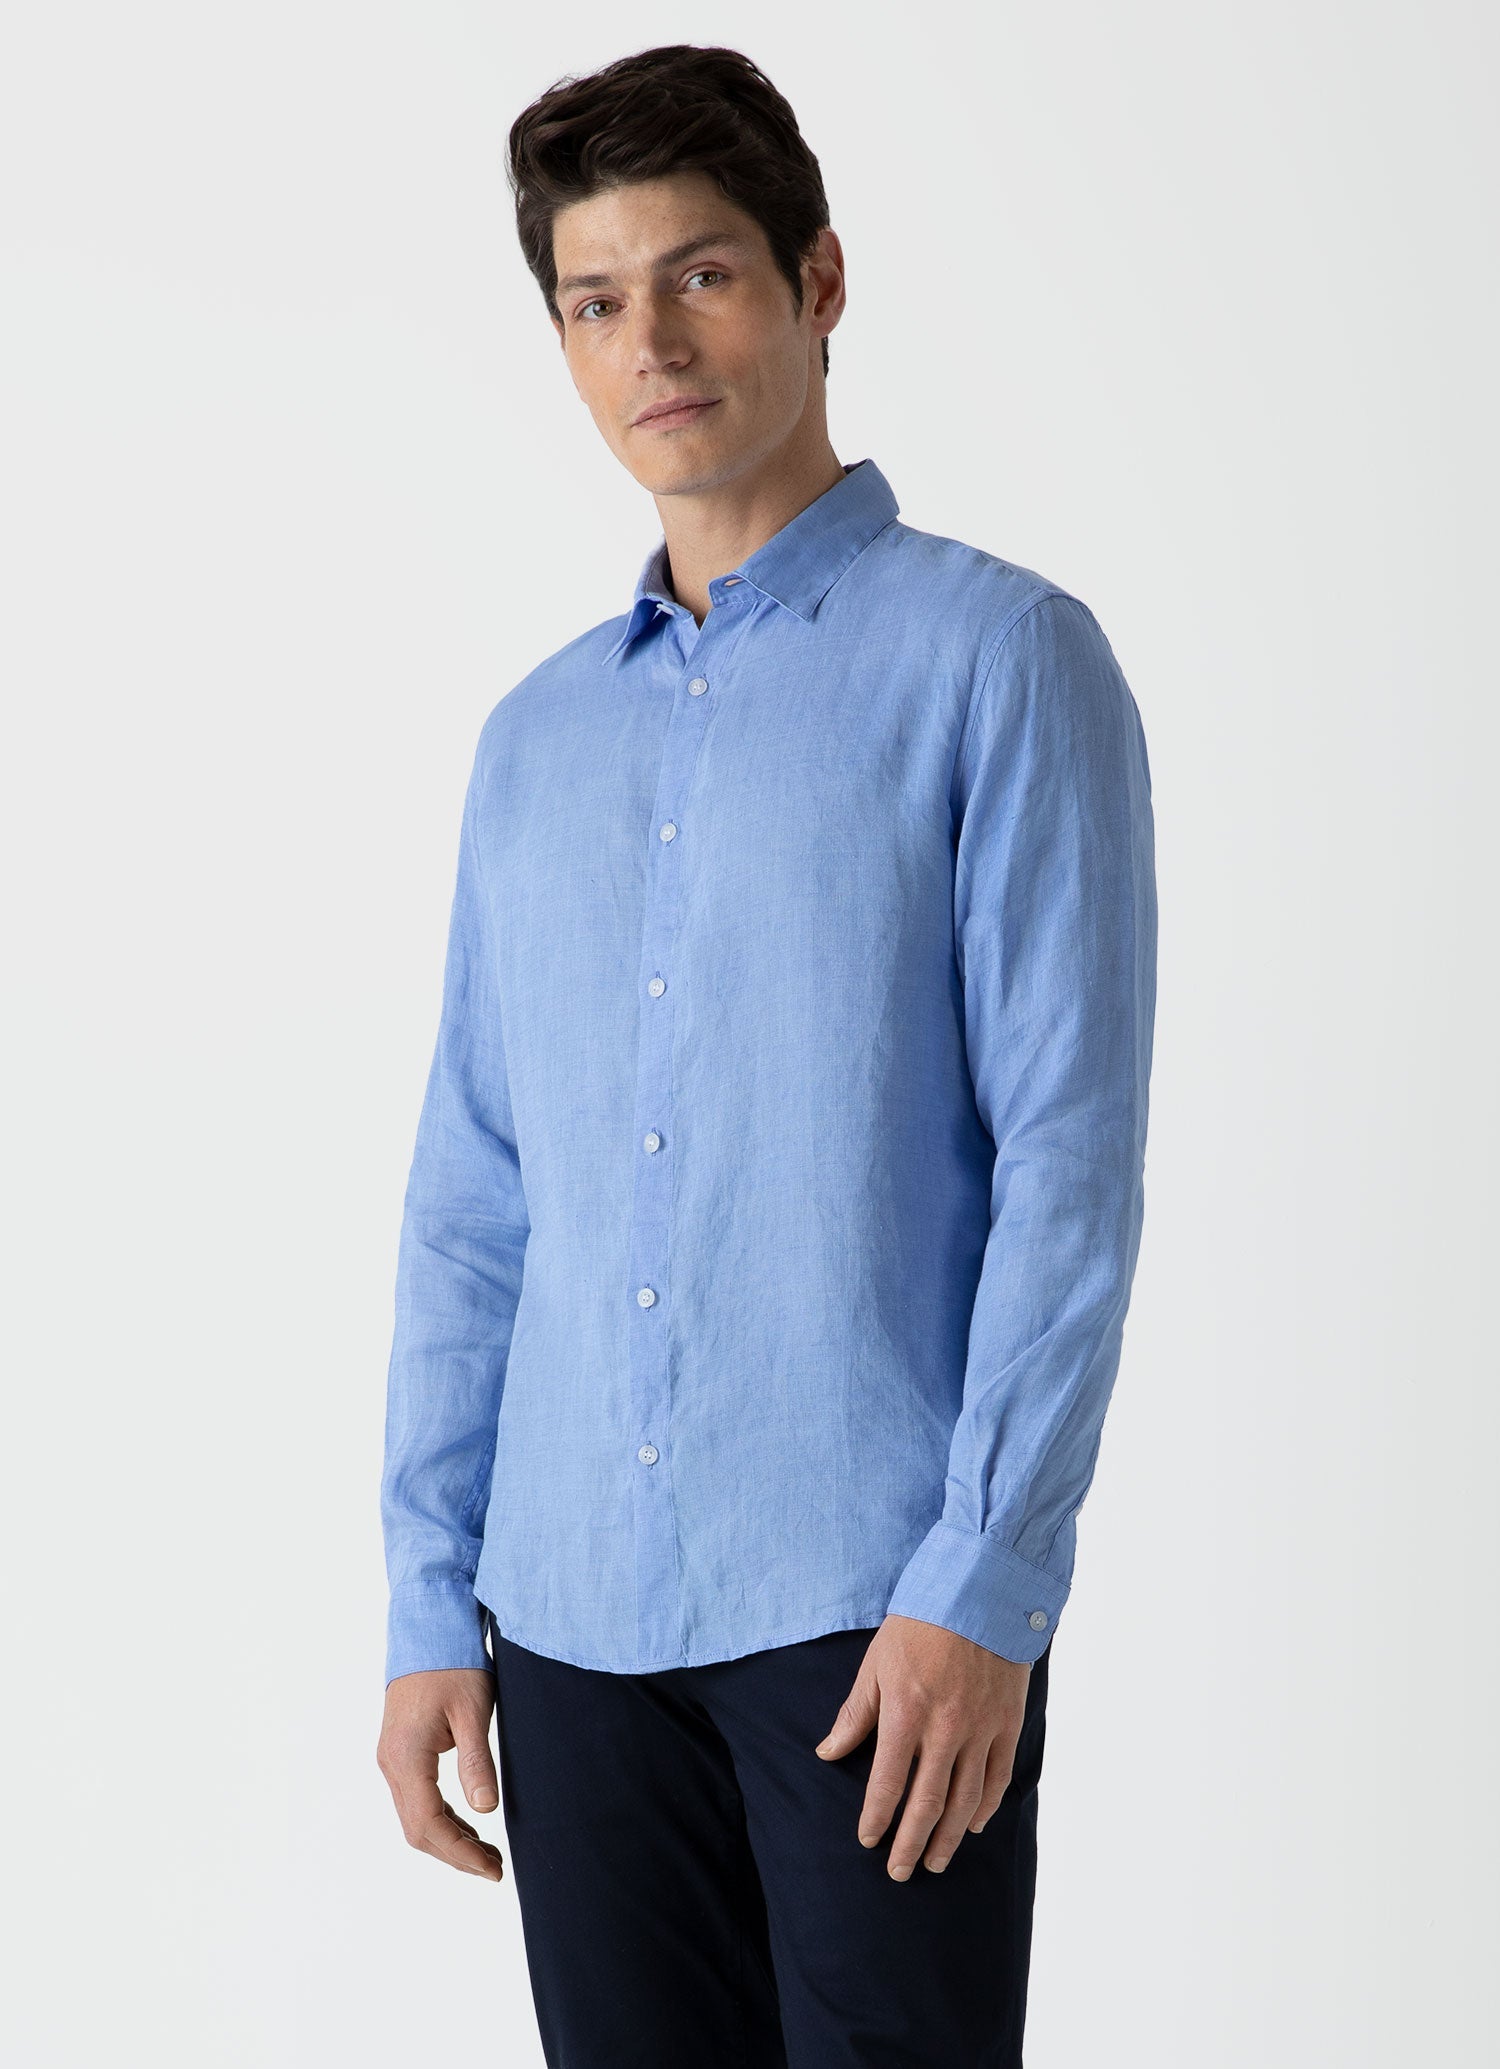 Men's Linen Shirt in Cool Blue